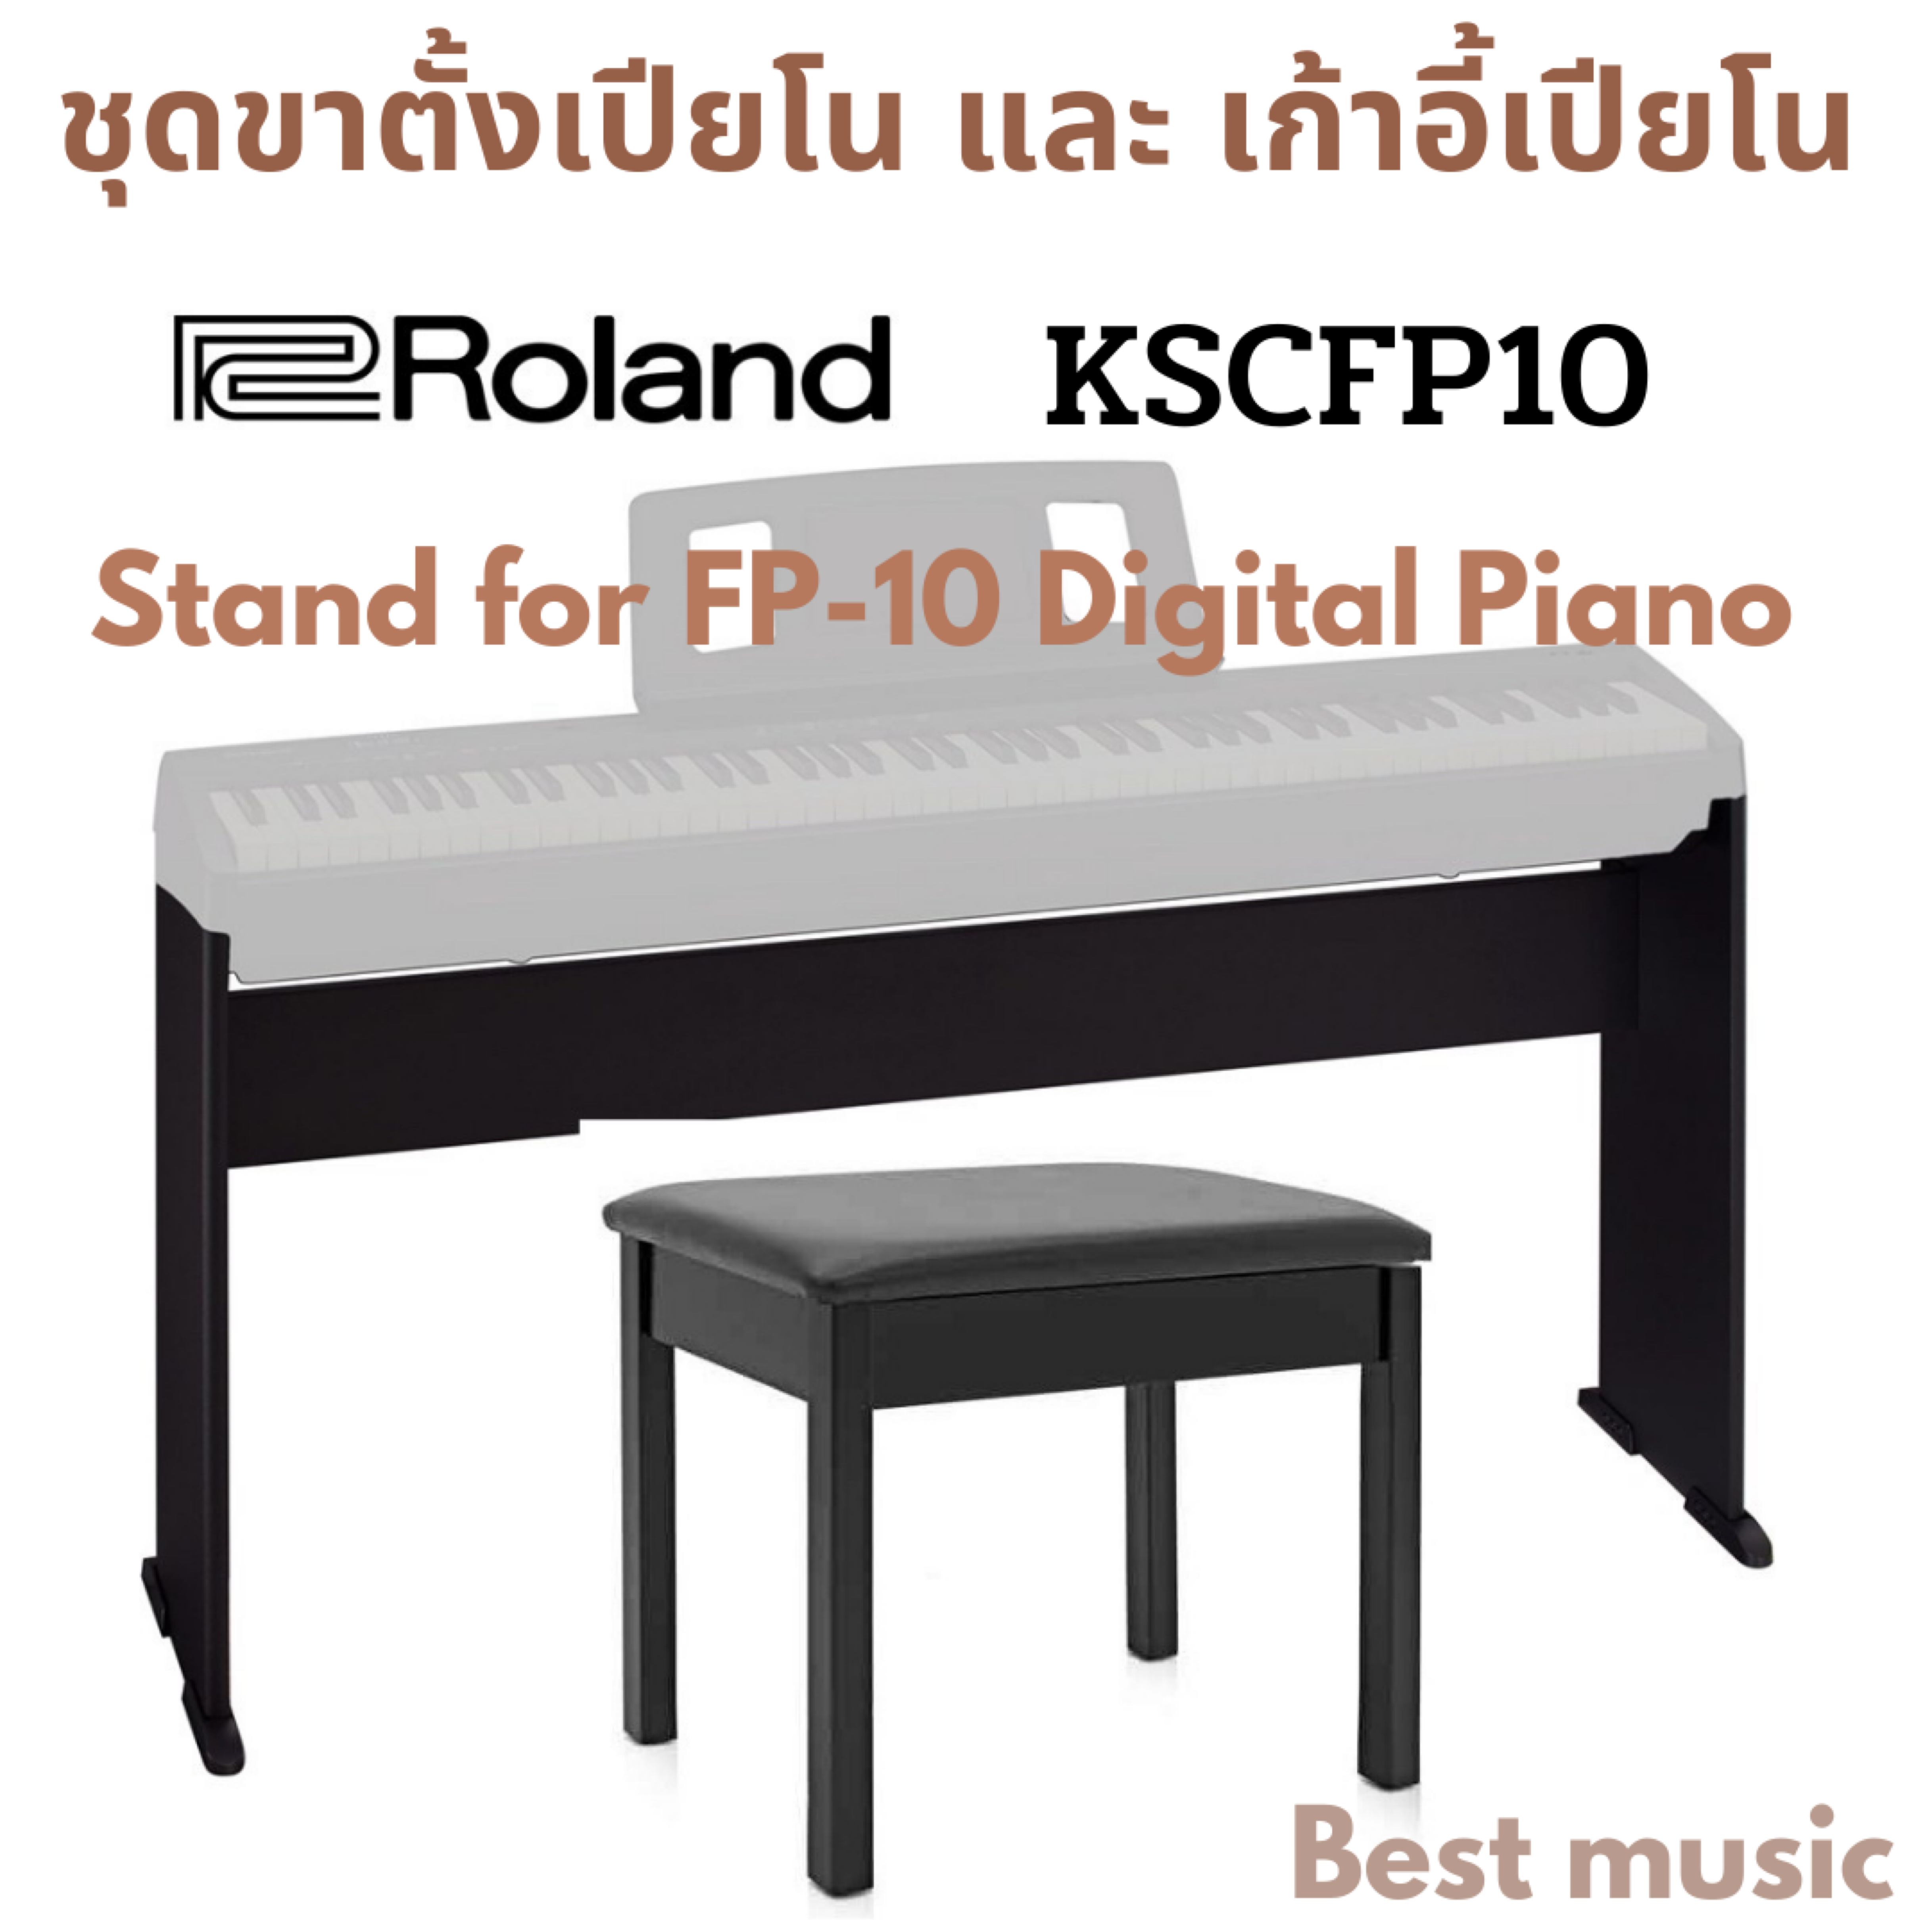 ชุดขาตั้ง + เก้าอี้เปียโน Roland KSCFP10BK For Roland FP-10